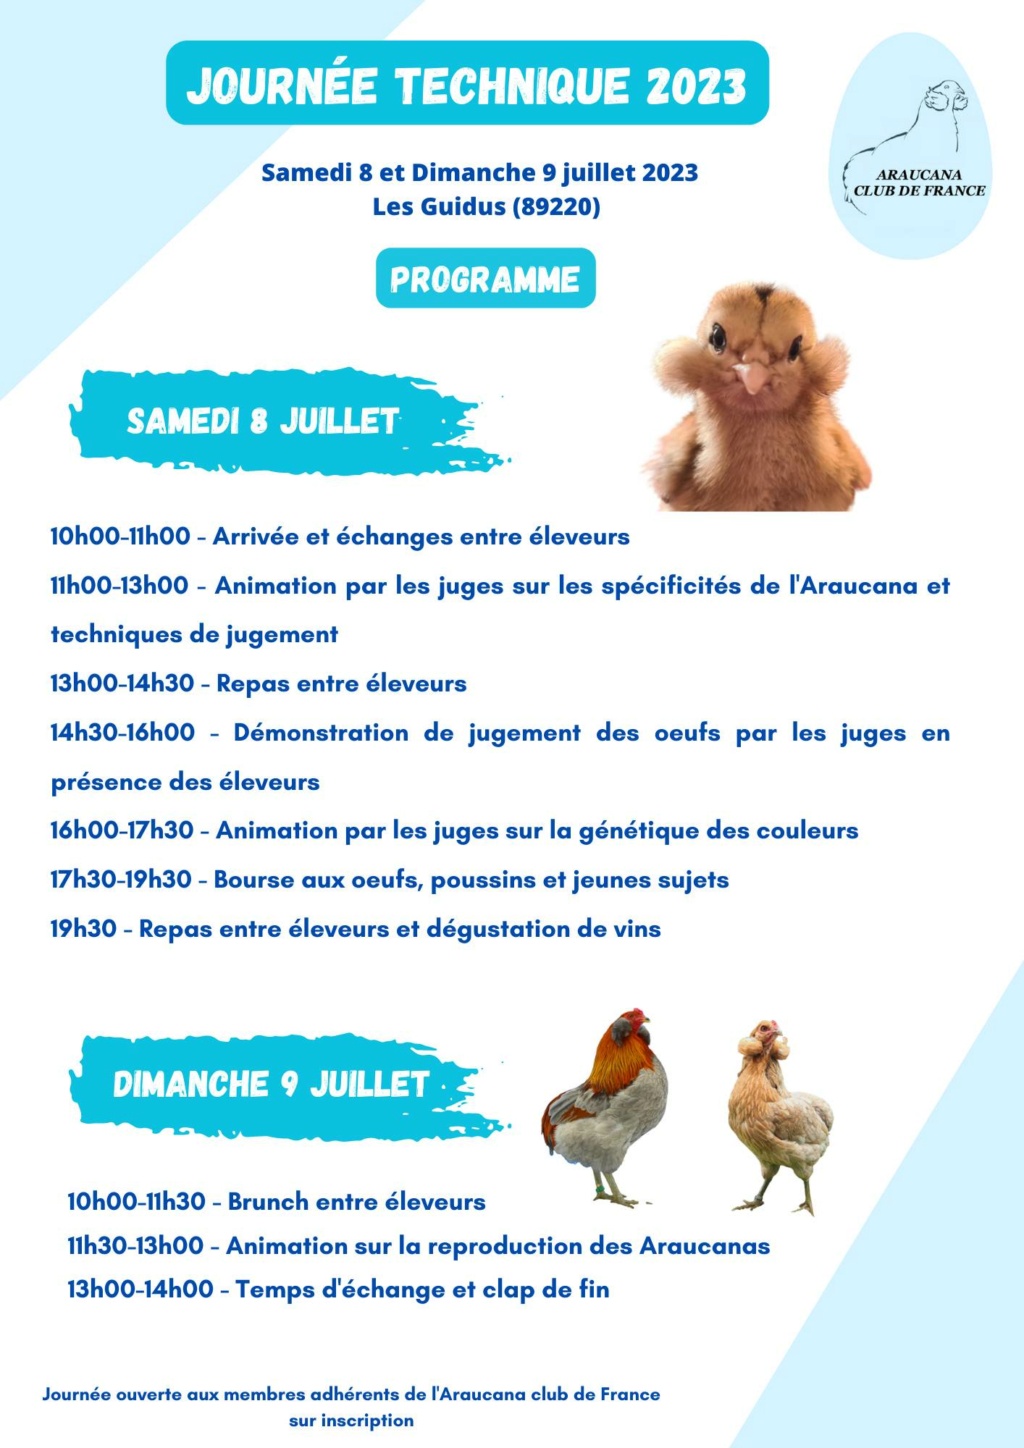 Les Guidus (89) - (Journée technique avicole de l'Araucana Club de France) Jt-ara10